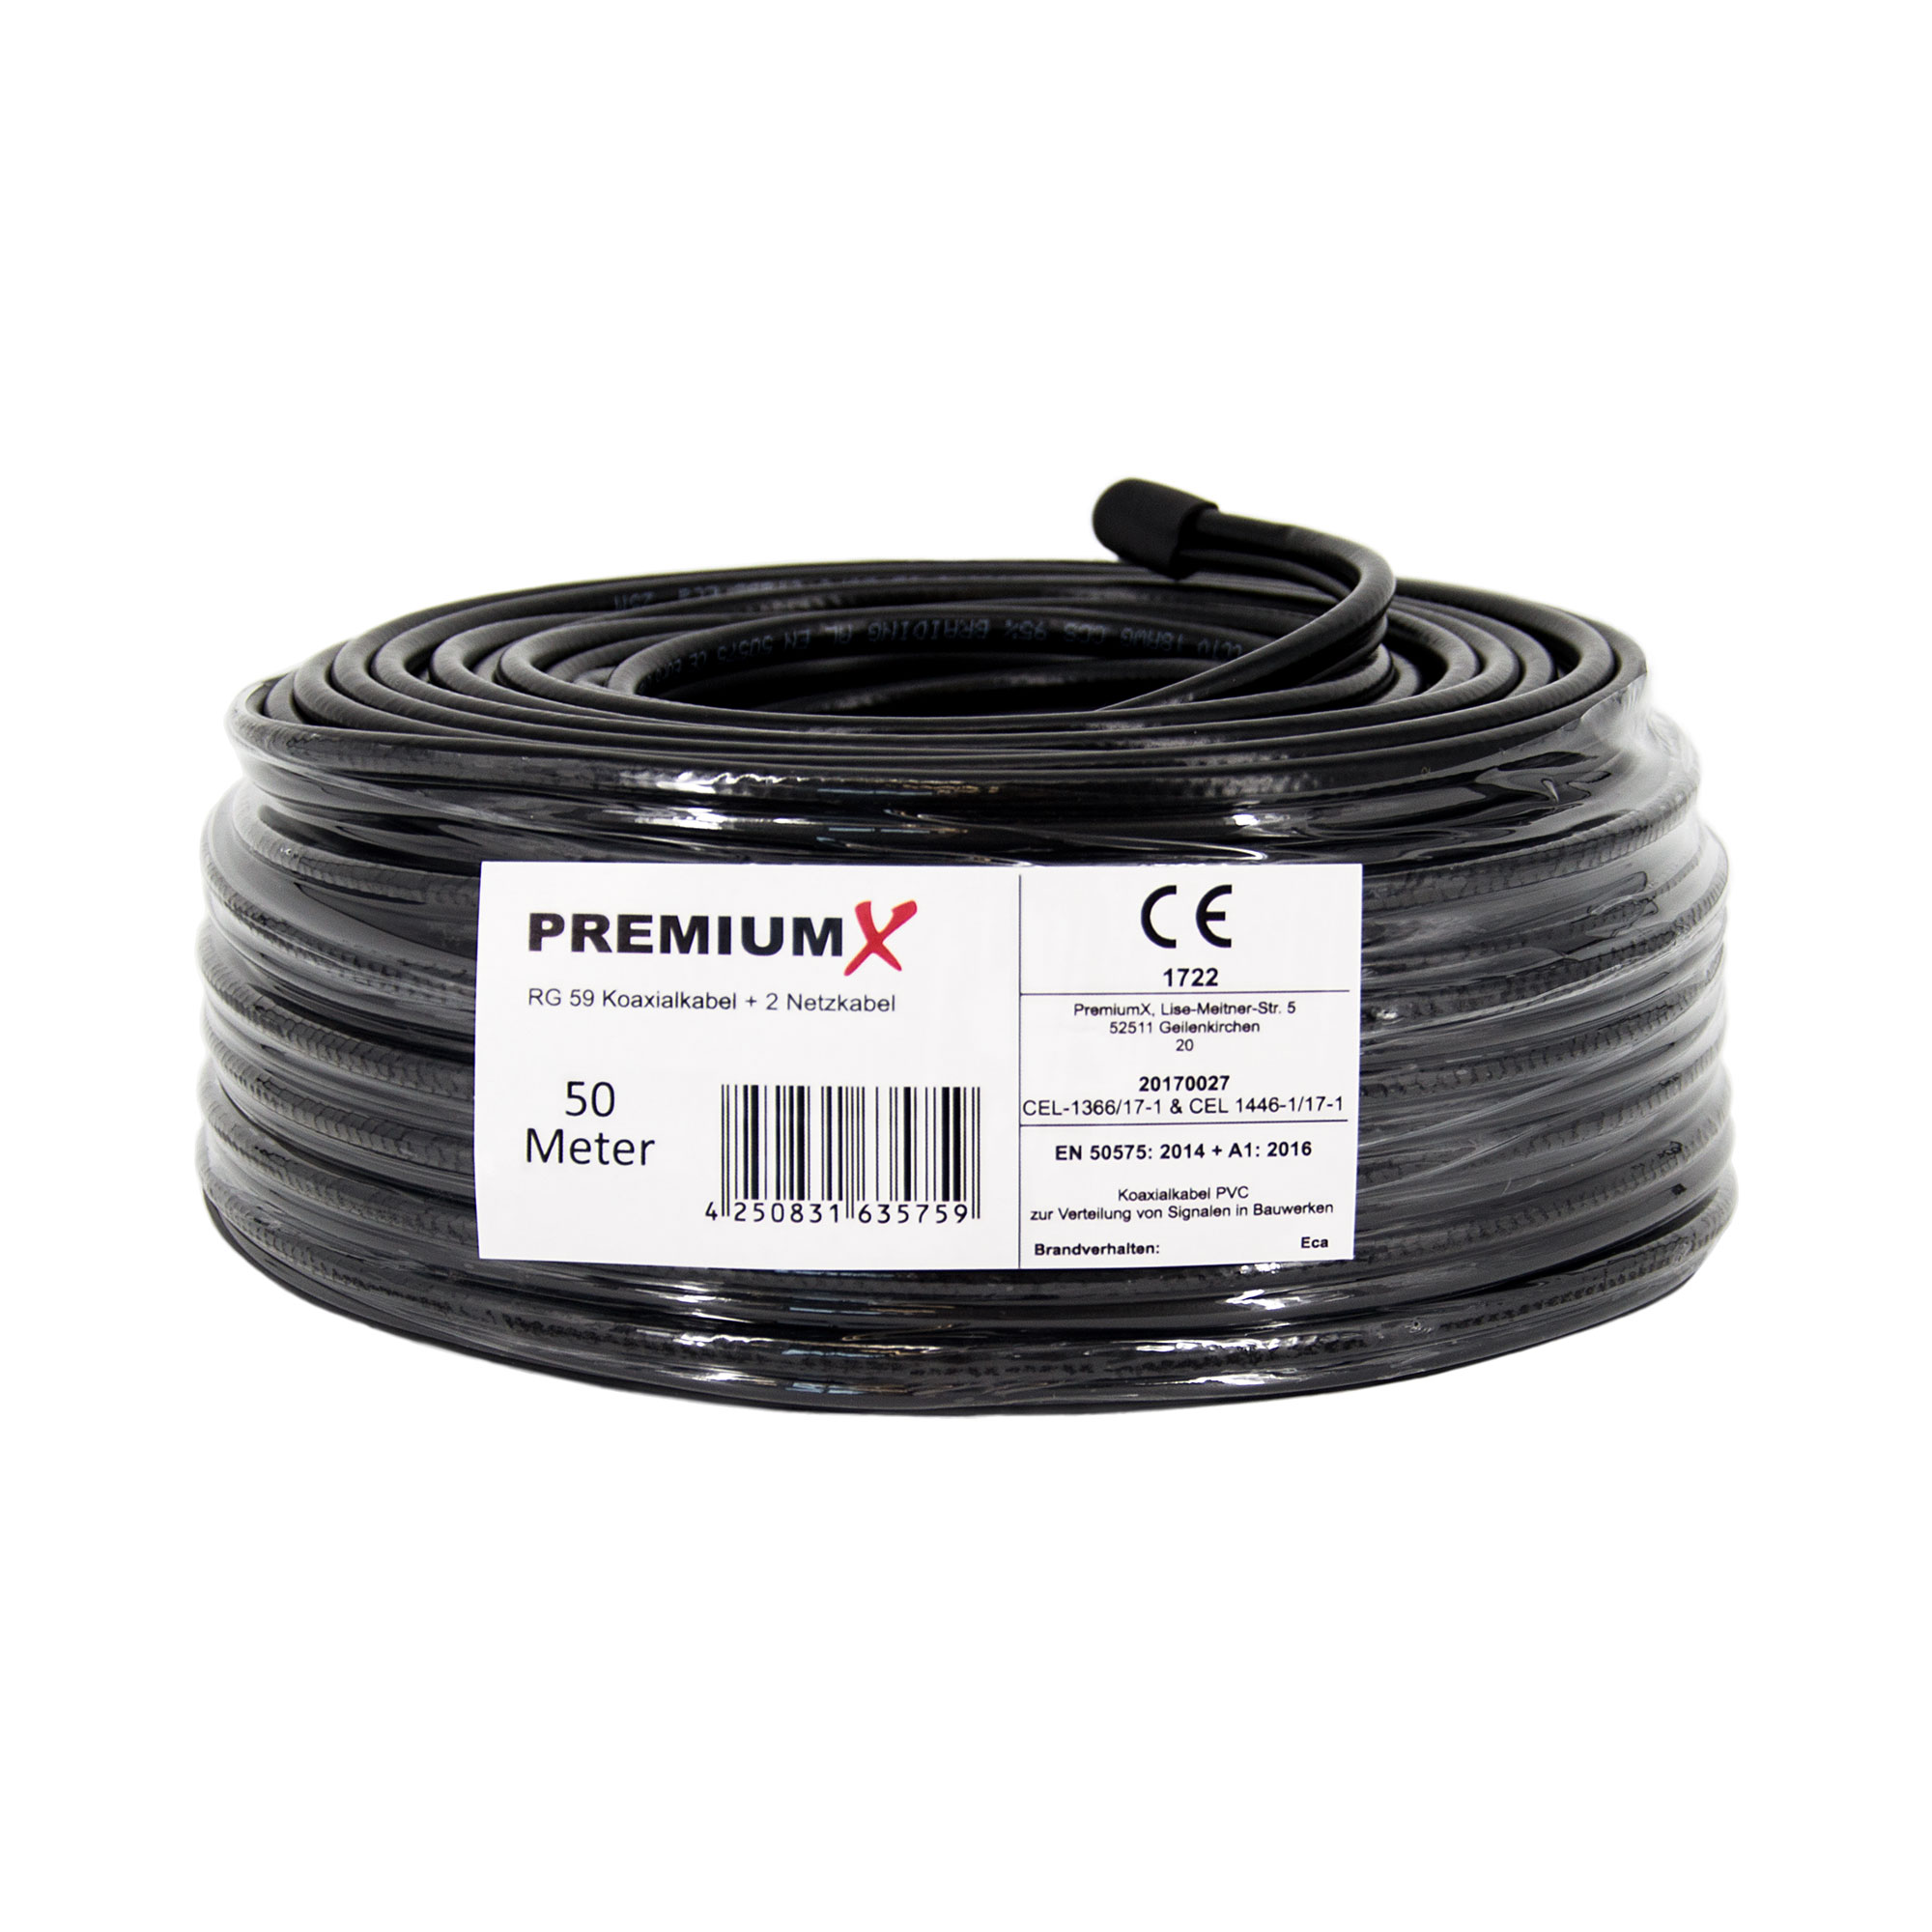 PREMIUMX 50m RG59 Koaxialkabel + Videobild 2 Stromversorgung Eca Videokabel und Netzkabel